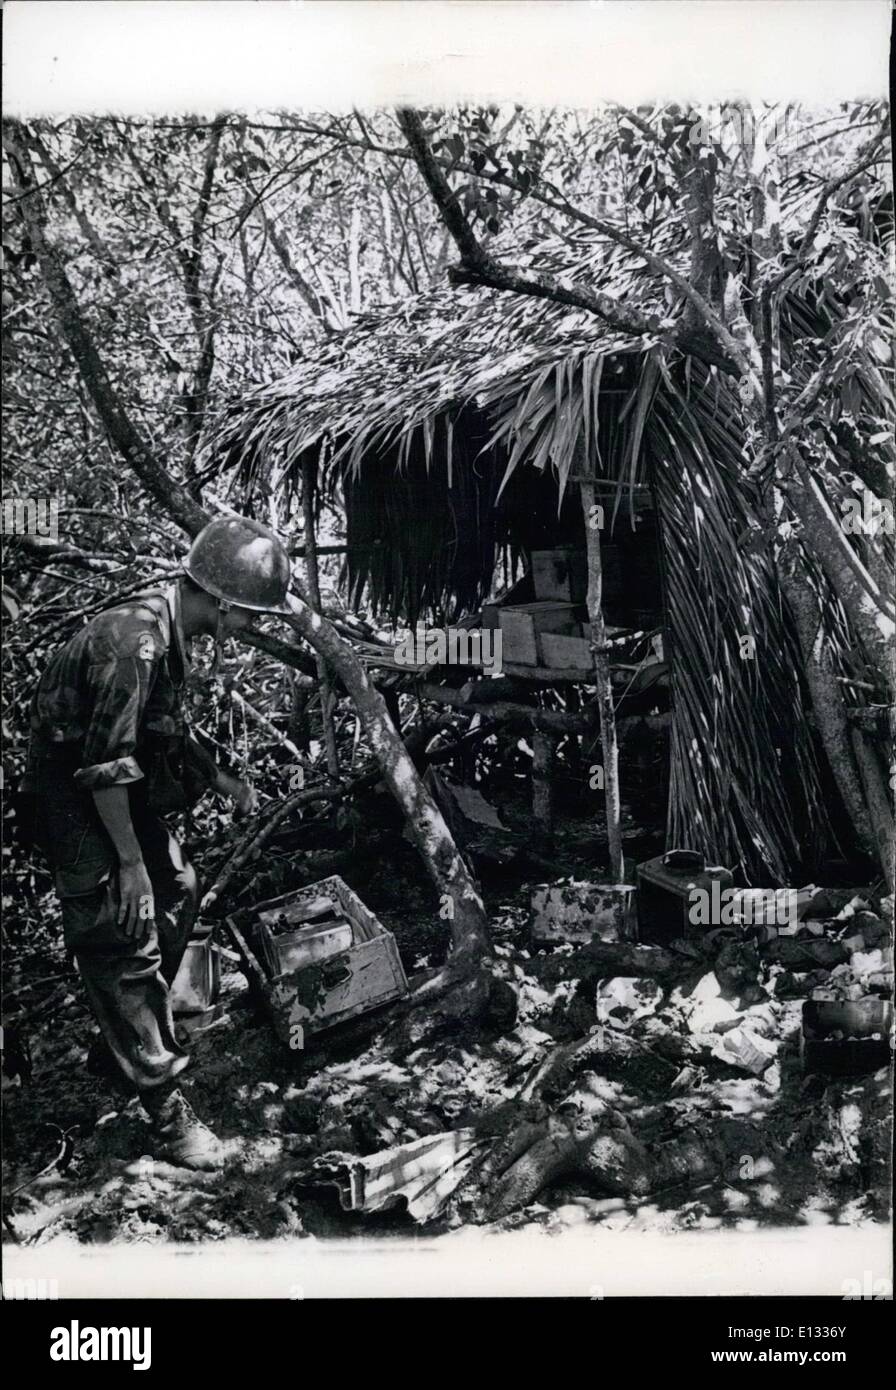 26. Februar 2012 - ein Guerilla-Arme-Dump wird in die Mangrovensümpfe der Halbinsel Camau von vietnamesischen Truppen gefangen genommen, der Dump besteht aus Mörtel und Munition, auch Maschinengewehre. Stockfoto